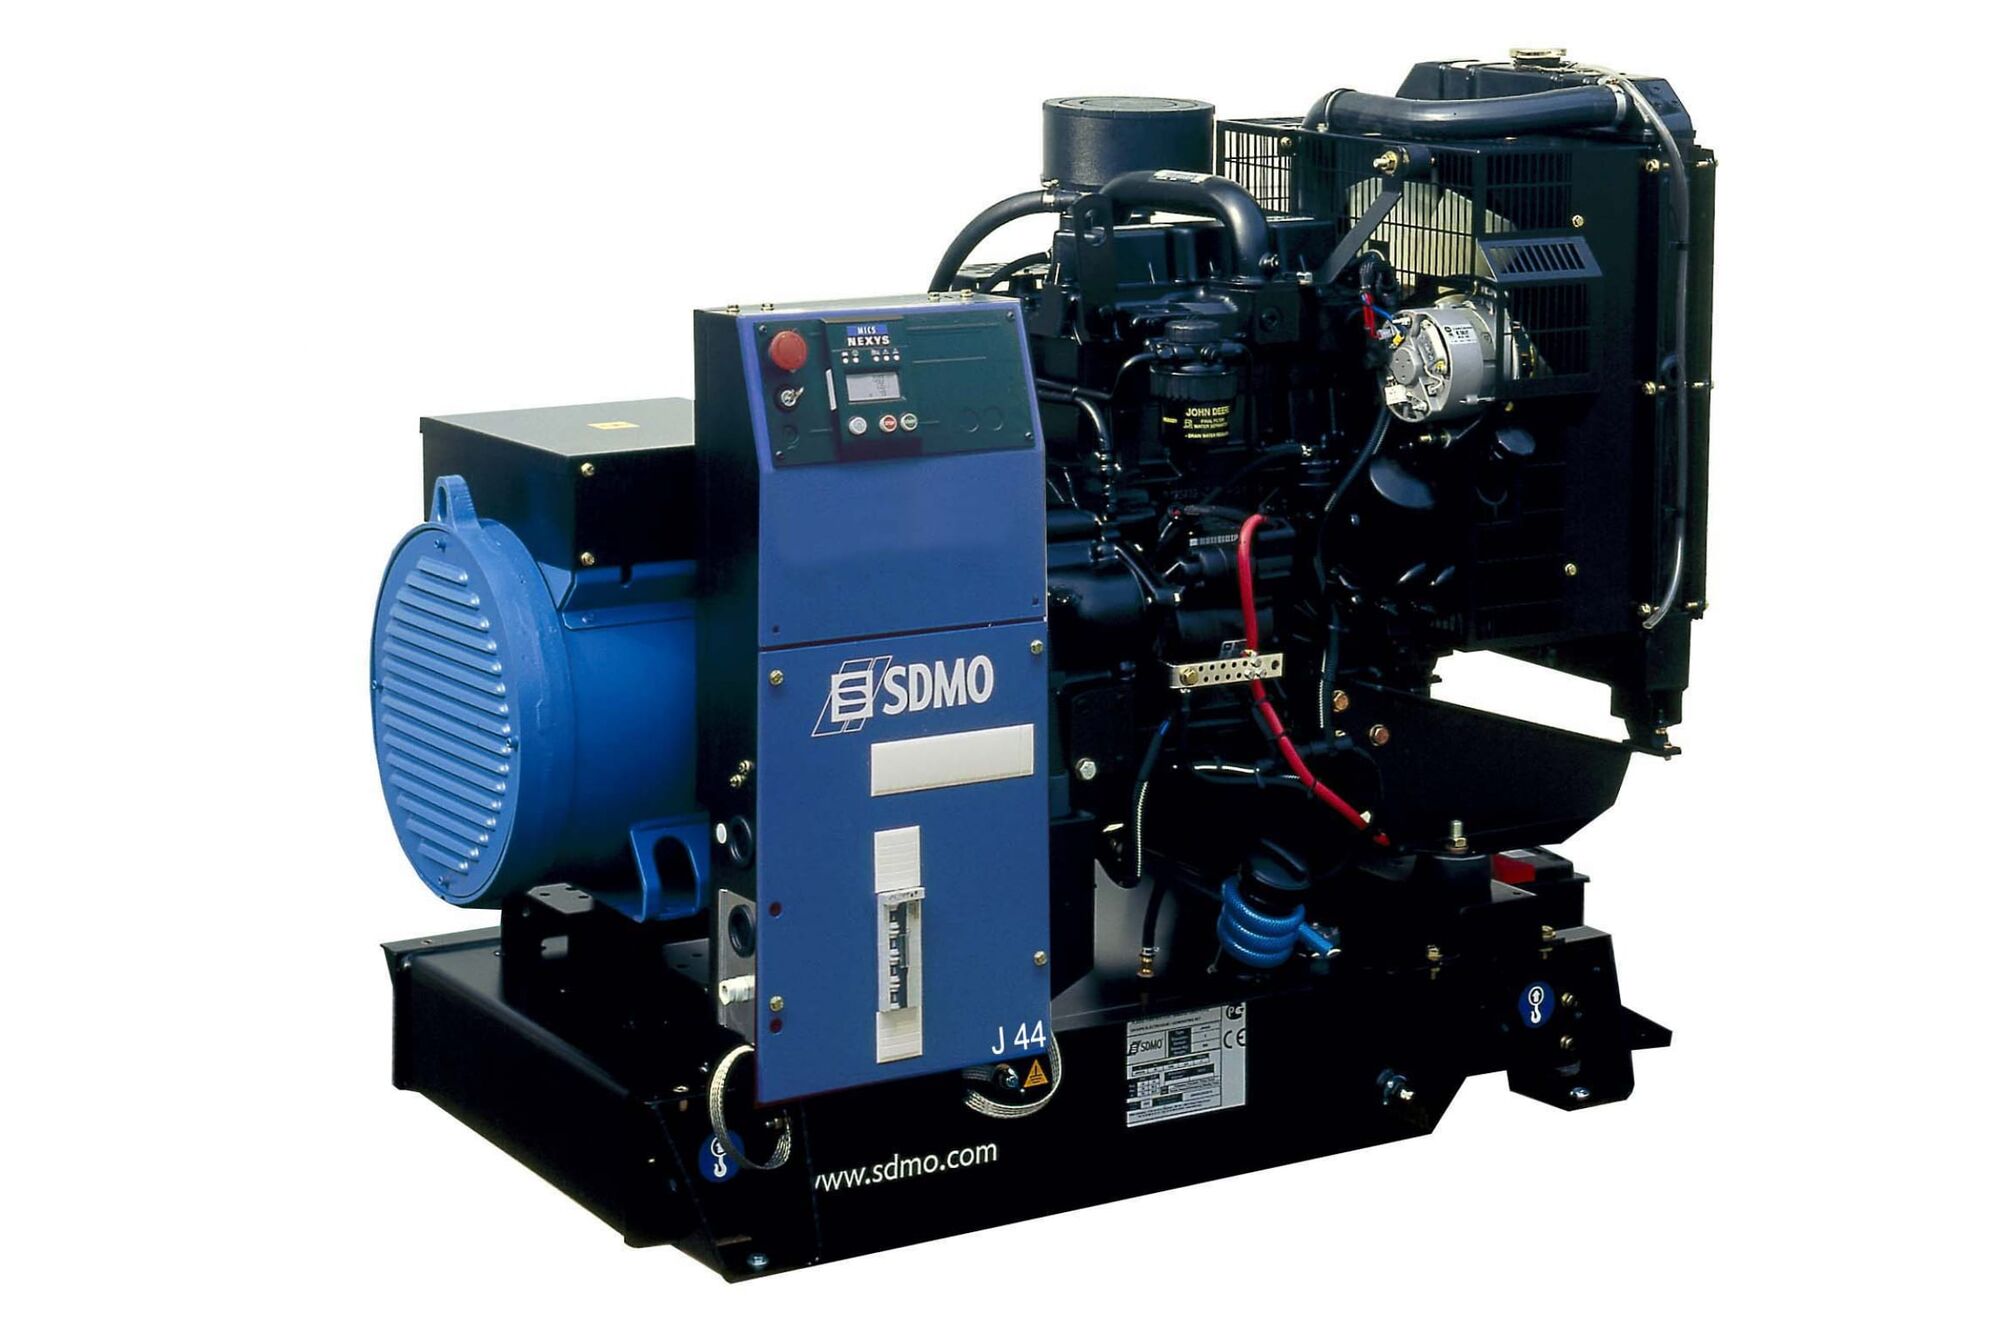 Дизельная генераторная установка SDMO J 44 (J44K)